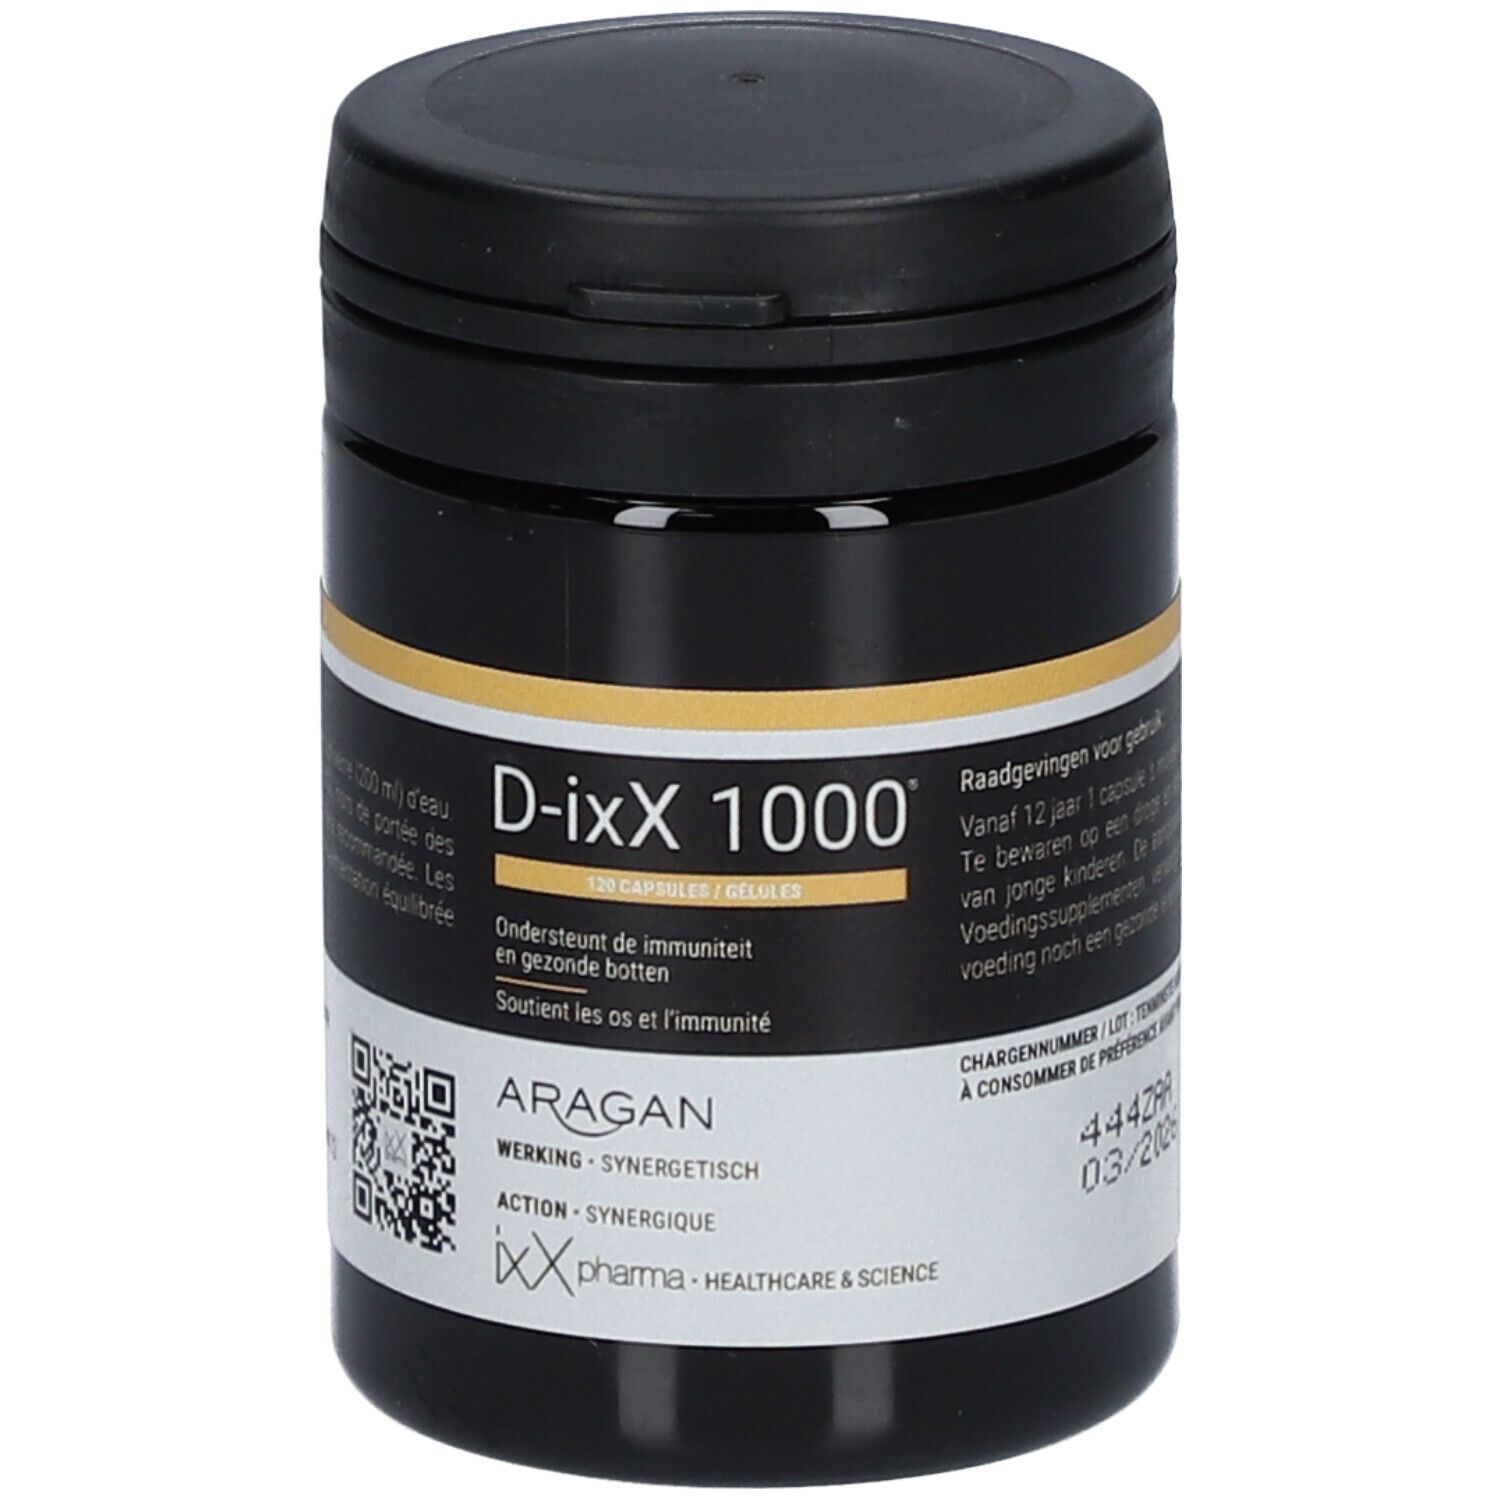 D-ixX 1000